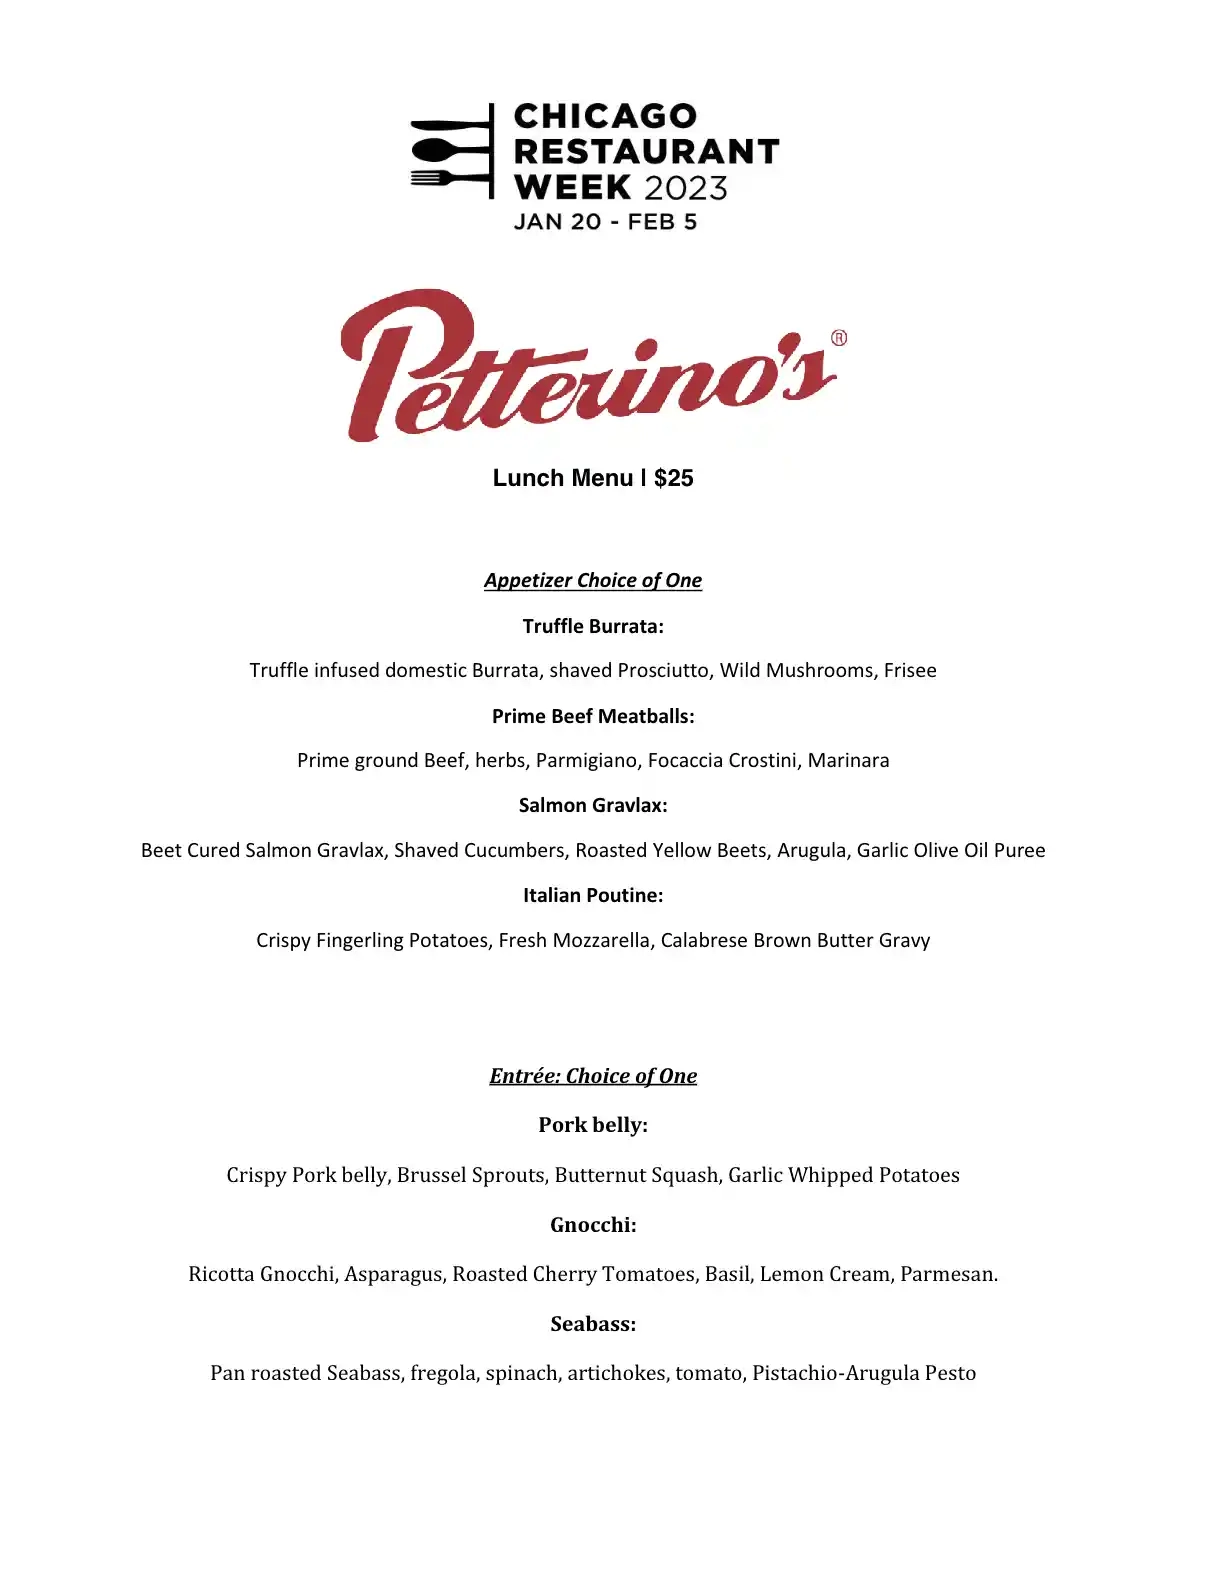 Chicago Restaurant Week 2023 Menu Petterinos Lunch